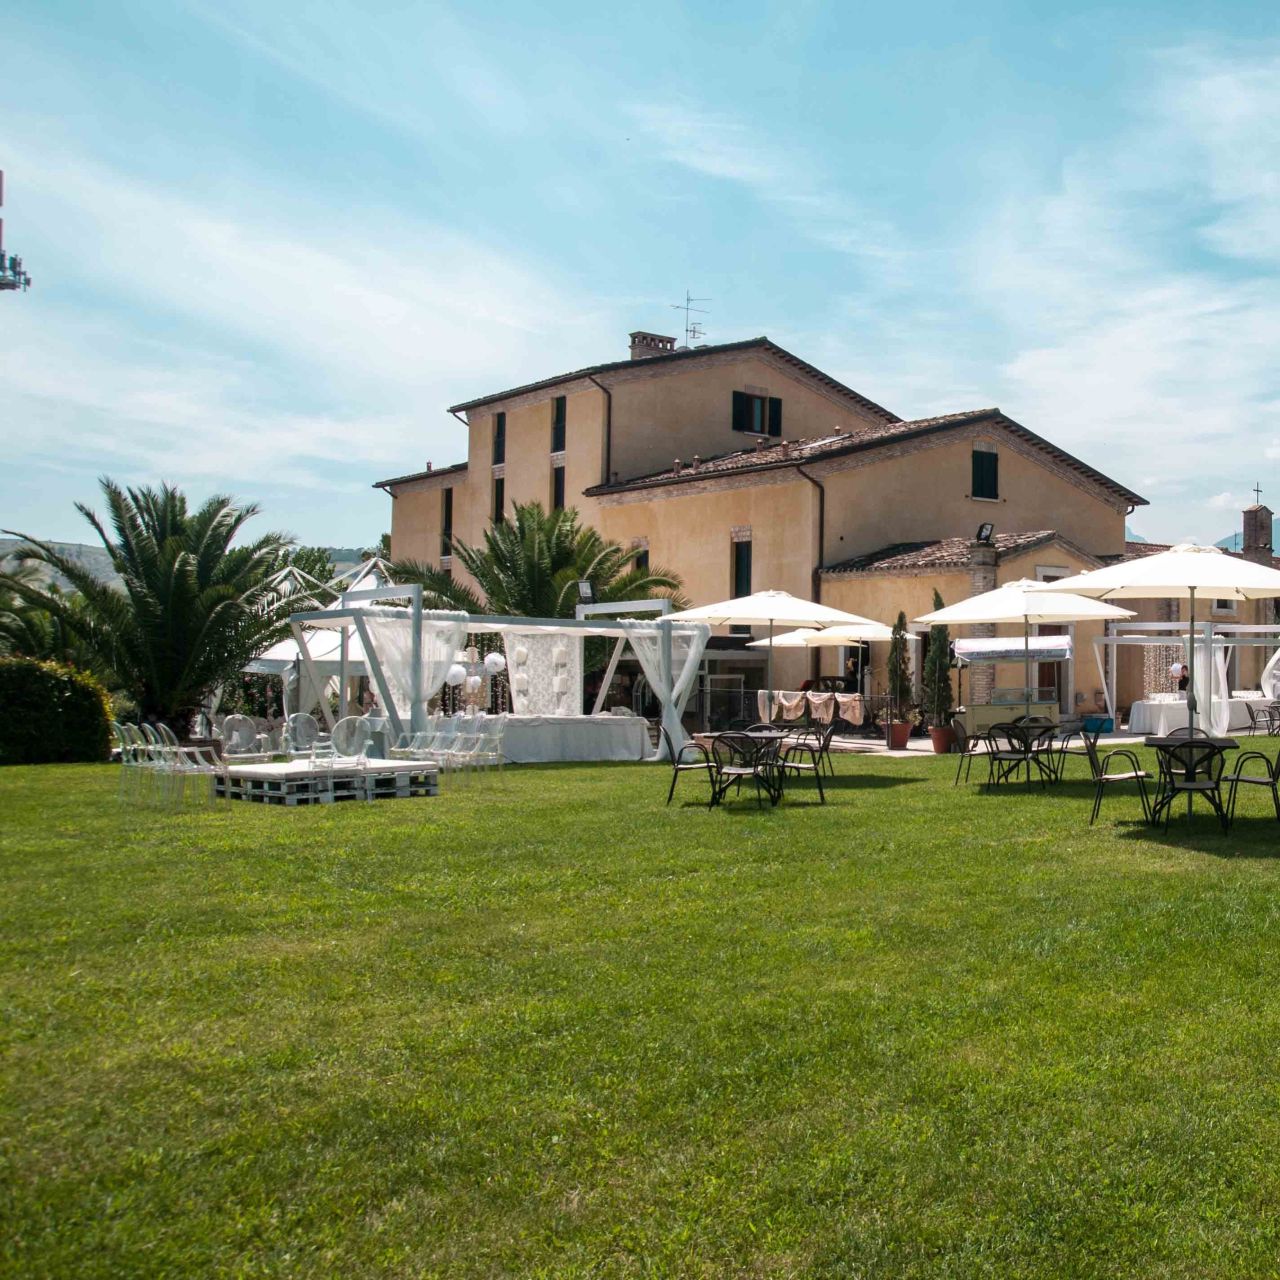 Hotel Corte del Sole - Ascoli Piceno presso HRS con servizi gratuiti